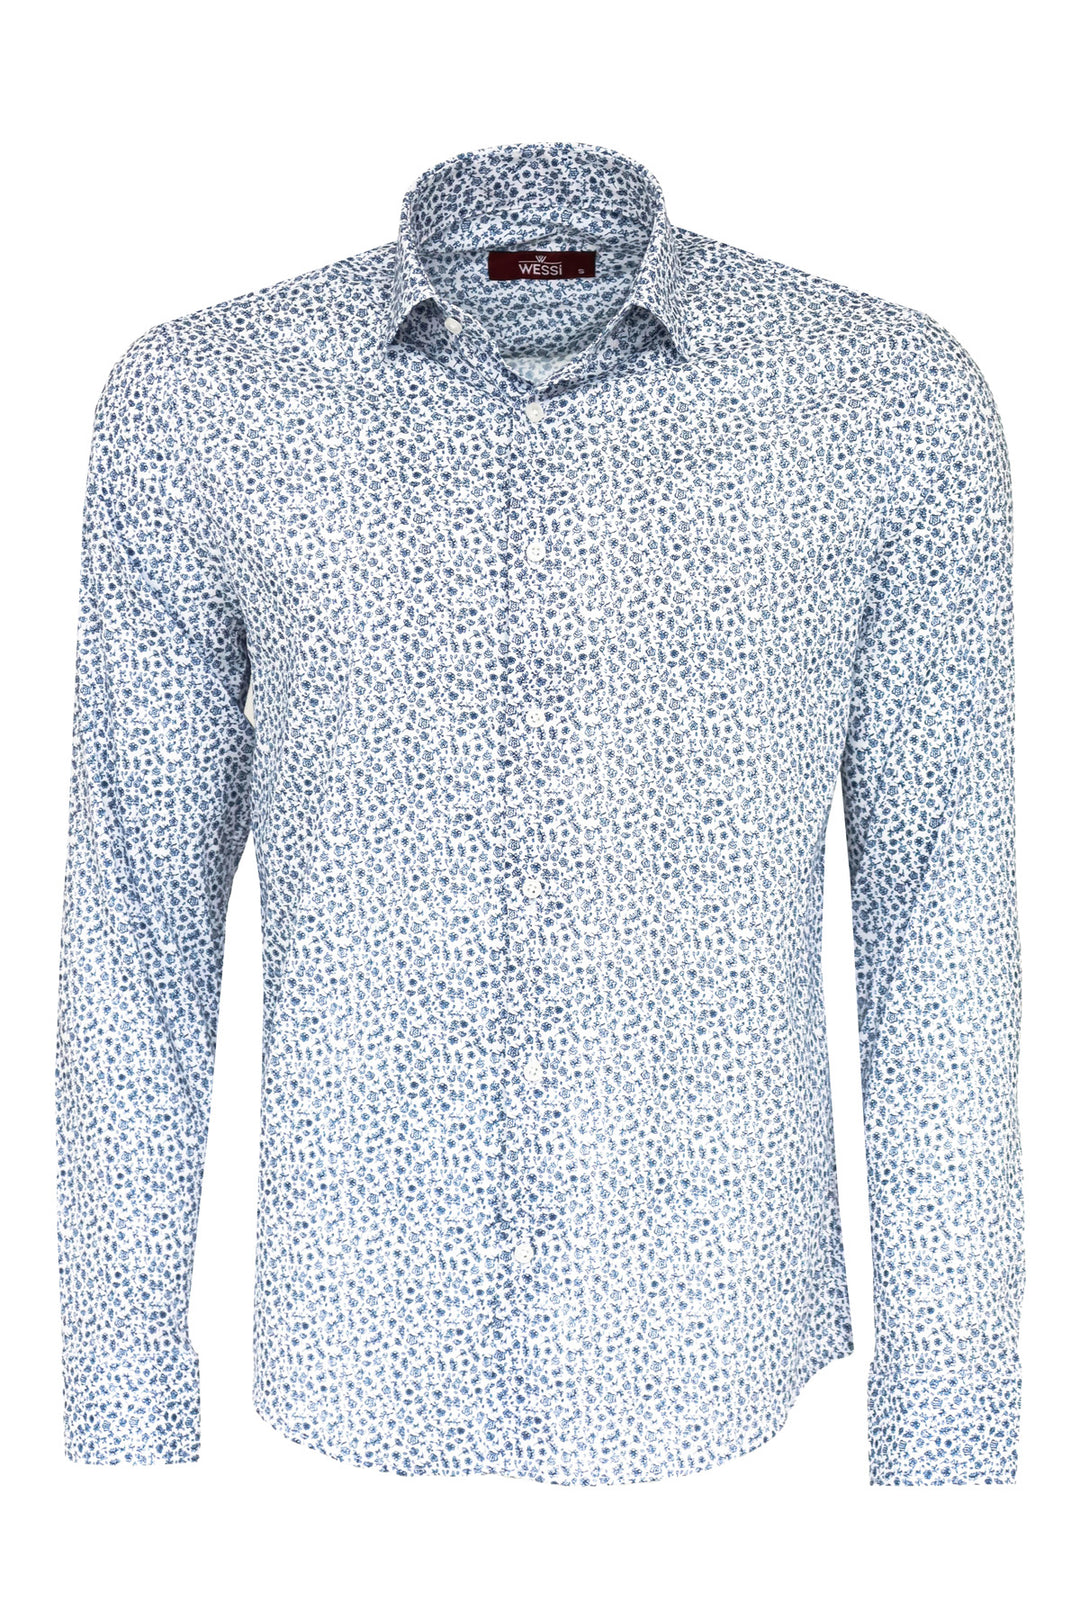 Blue Floral Patterned Slim Fit White Men Shirt - Wessi